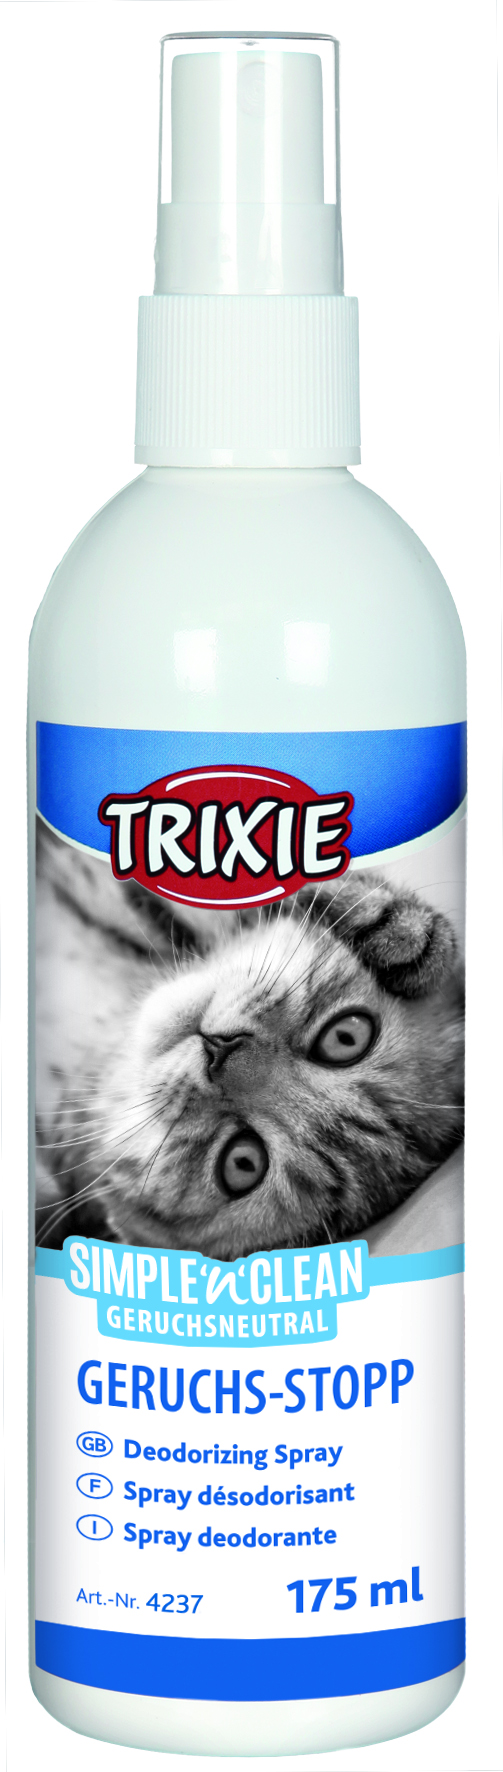 Trixie Geruchs-Stopp 175 ml